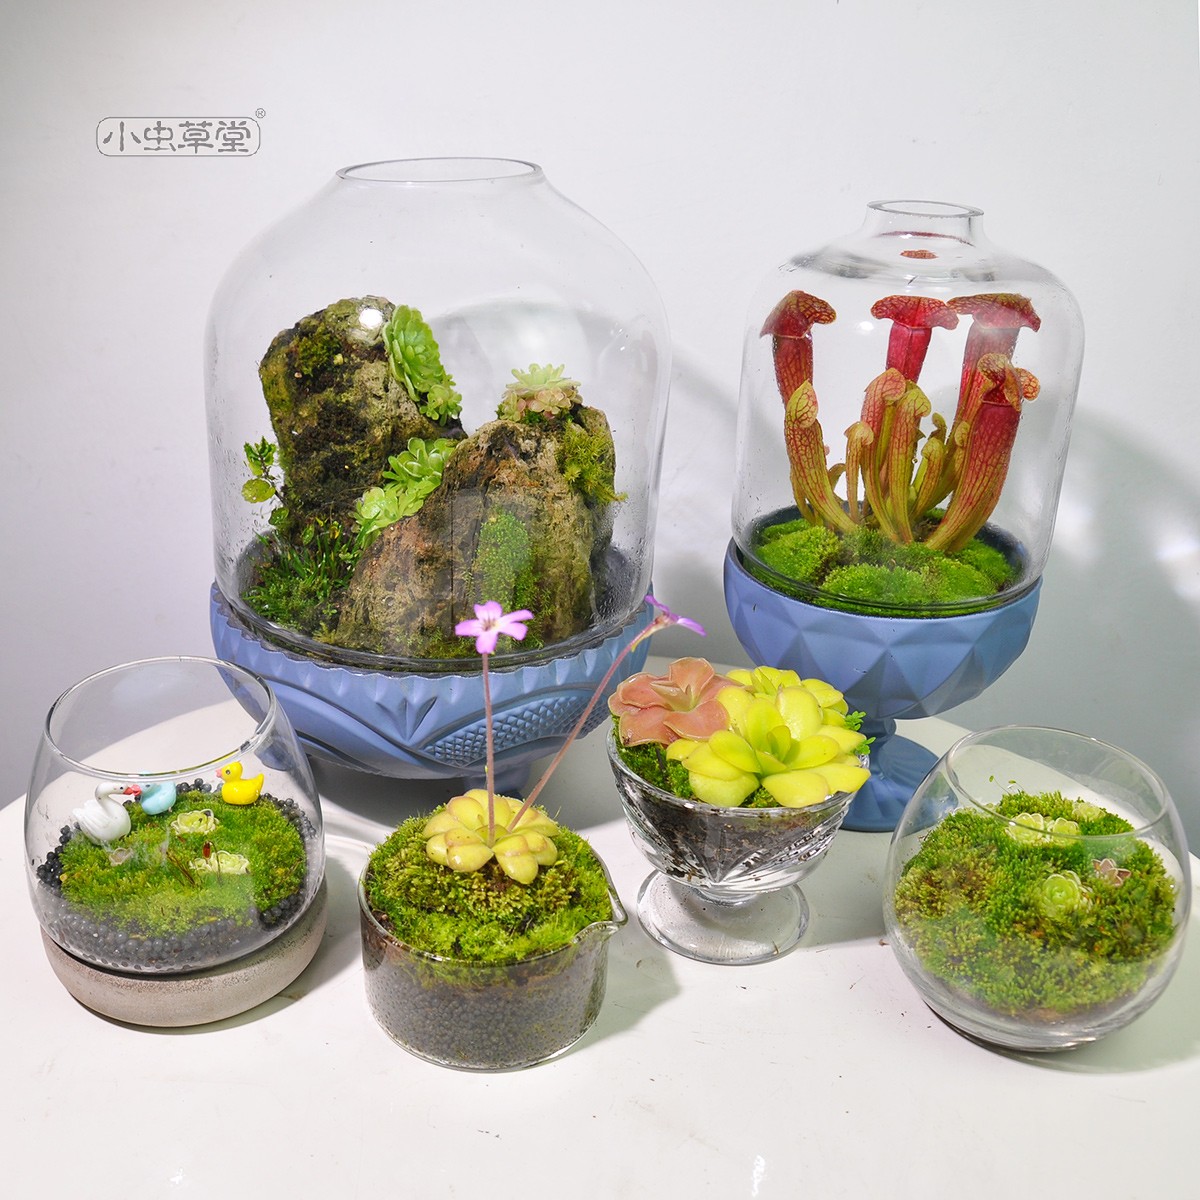 微景观闷养罐小虫草堂食虫植物捕蝇草生态瓶苔藓玻璃缸创意盆栽堇